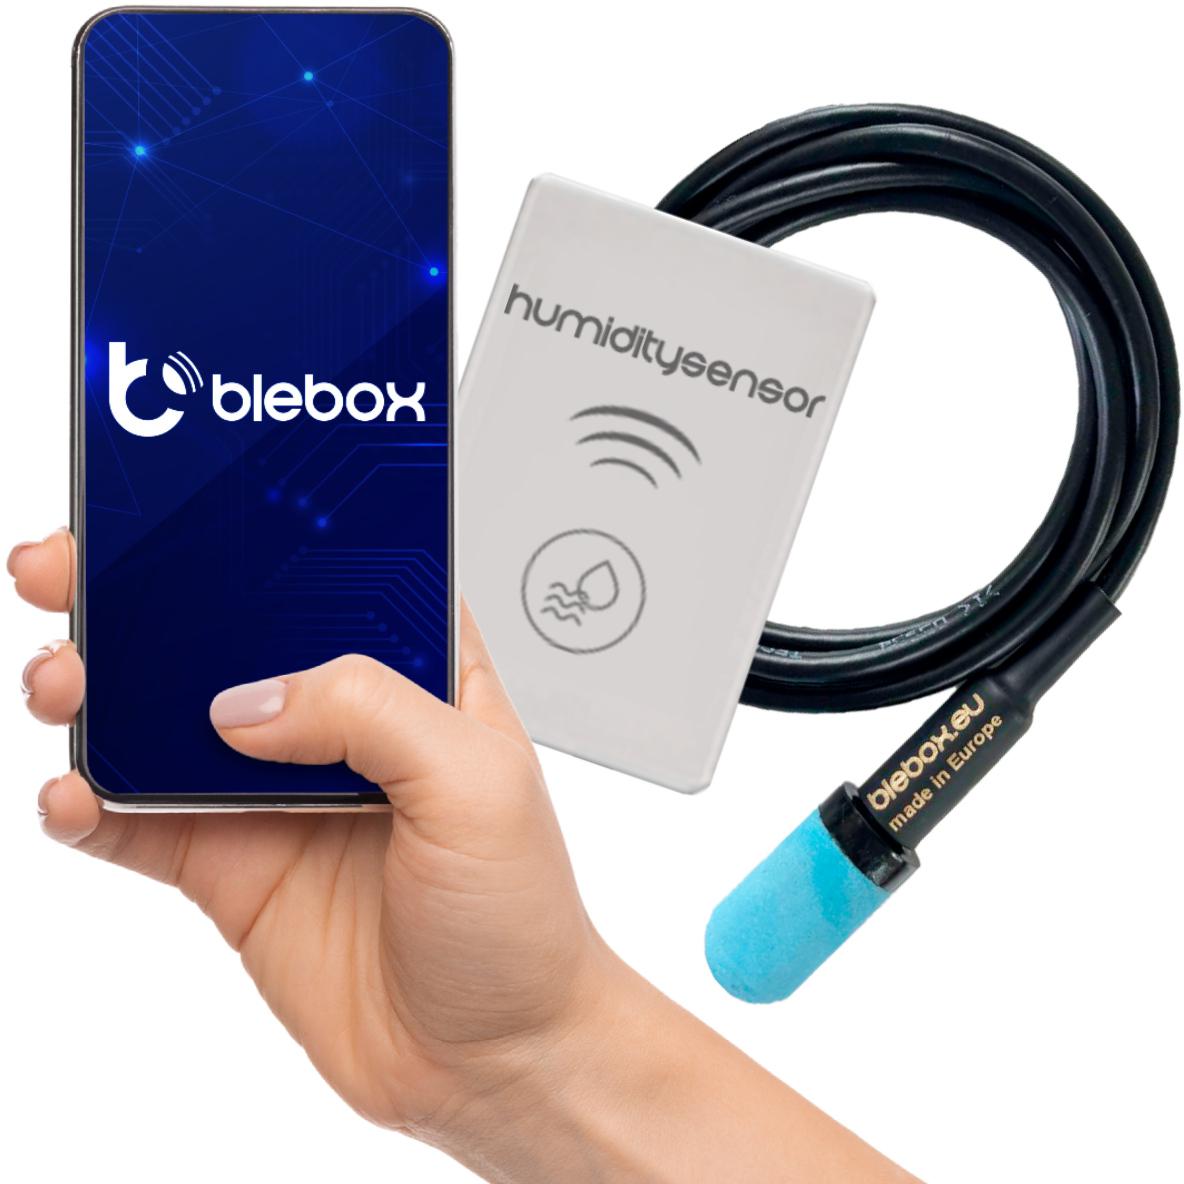 Czujnik temperatury i wilgotności WiFi BleBox humiditySensor - specyfikacja i dane techniczne: